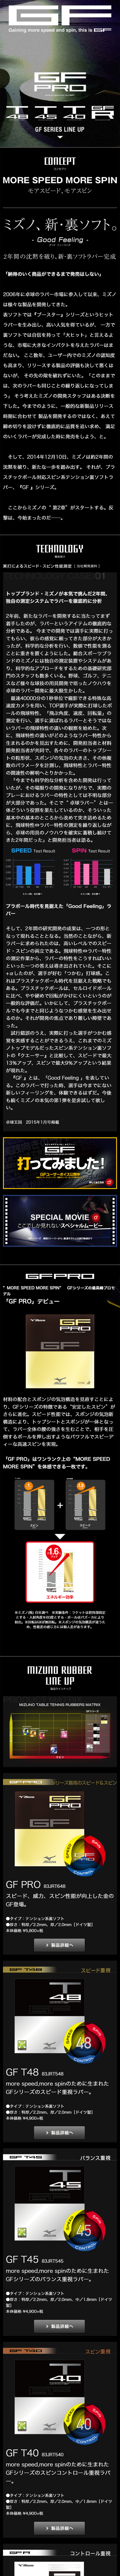 裏ソフトラバー GFシリーズ_sp_1